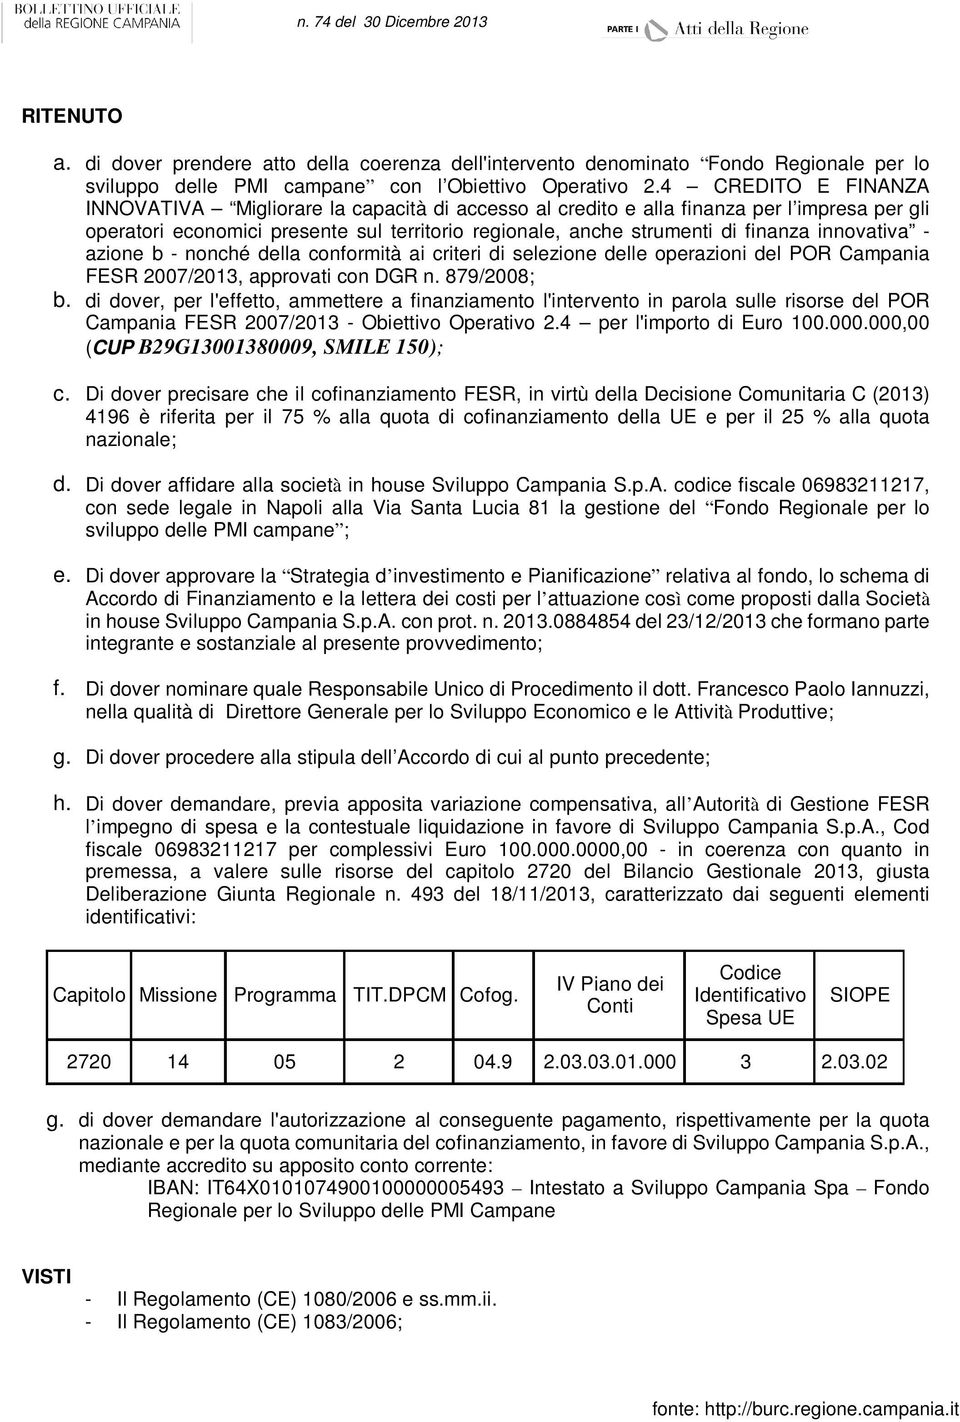 innovativa - azione b - nonché della conformità ai criteri di selezione delle operazioni del POR Campania FESR 2007/2013, approvati con DGR n. 879/2008; b.